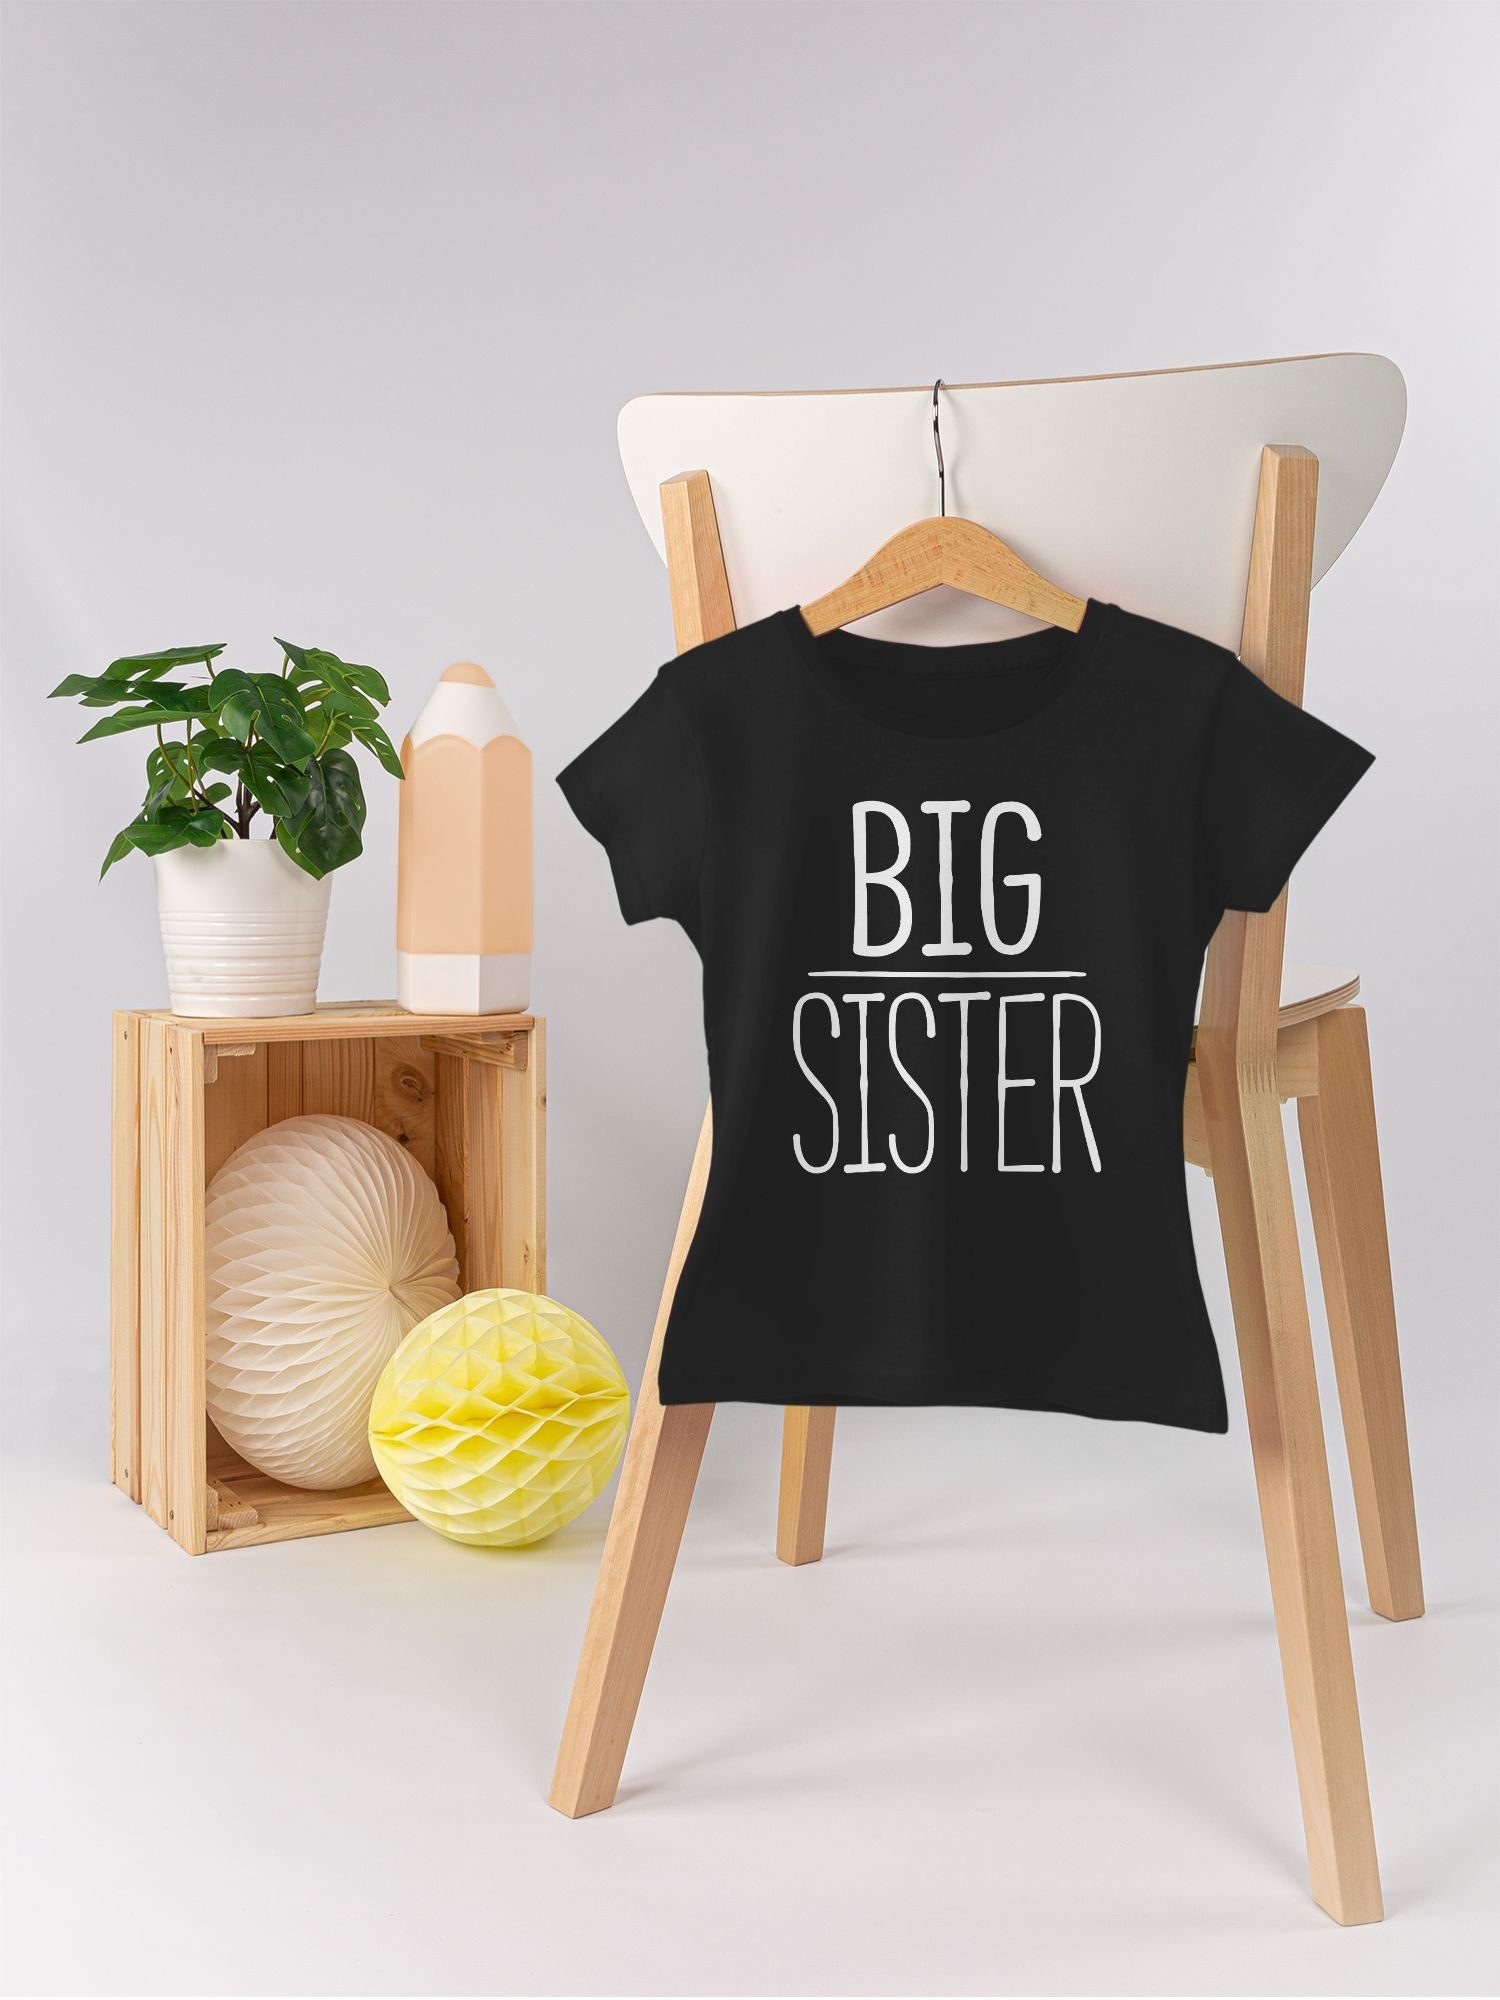 Shirtracer T-Shirt Big Schwarz Schwester 2 und Bruder Geschwister Sister